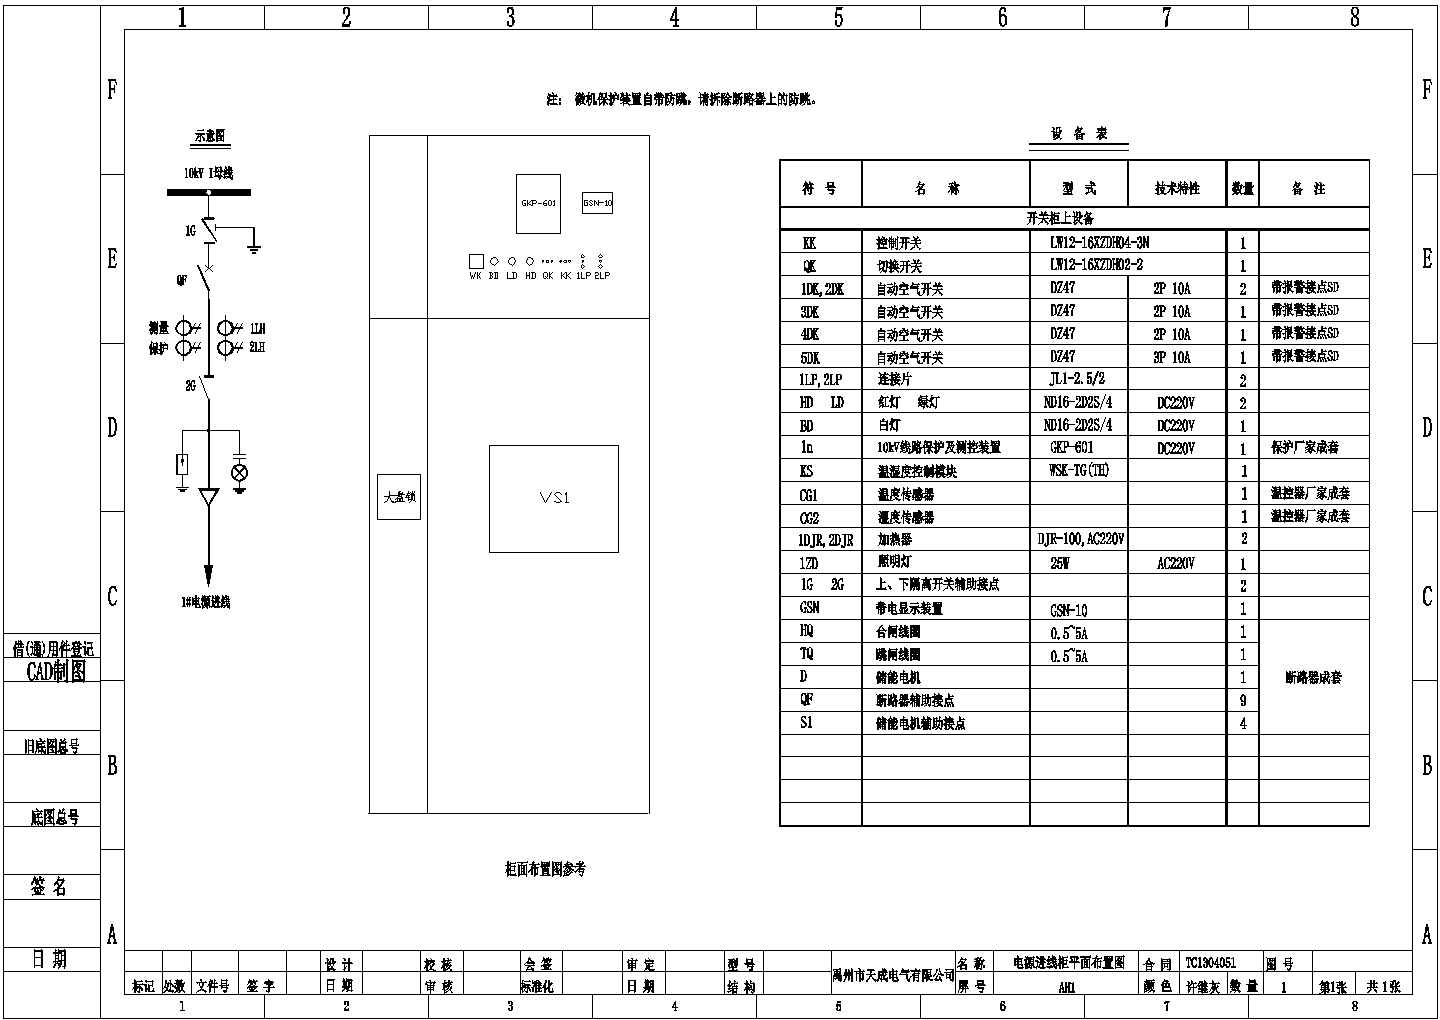 某建筑项目供配电工程高压柜 HXGN12 配线原理图